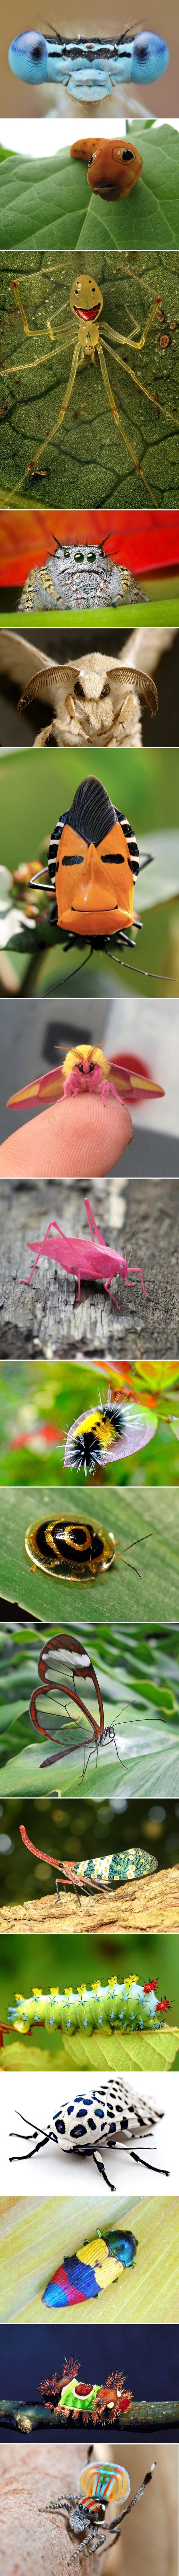 Najčudnije fotografije insekata koji izgledaju kao da nisu s ovog planeta